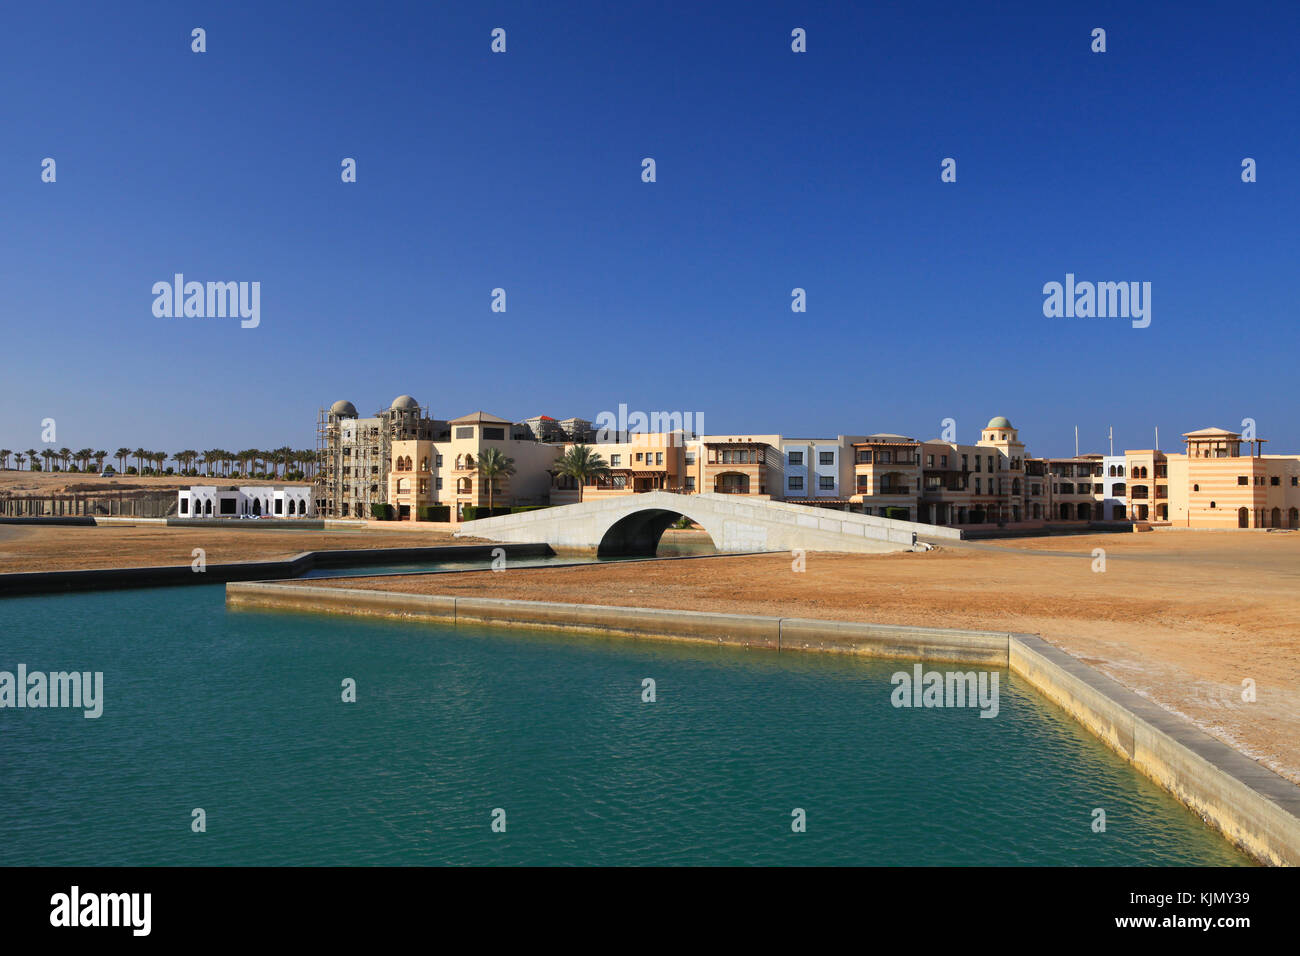 Port Ghalib, un beau port de plaisance, ville touristique et près de Marsa Alam, Egypte. Banque D'Images